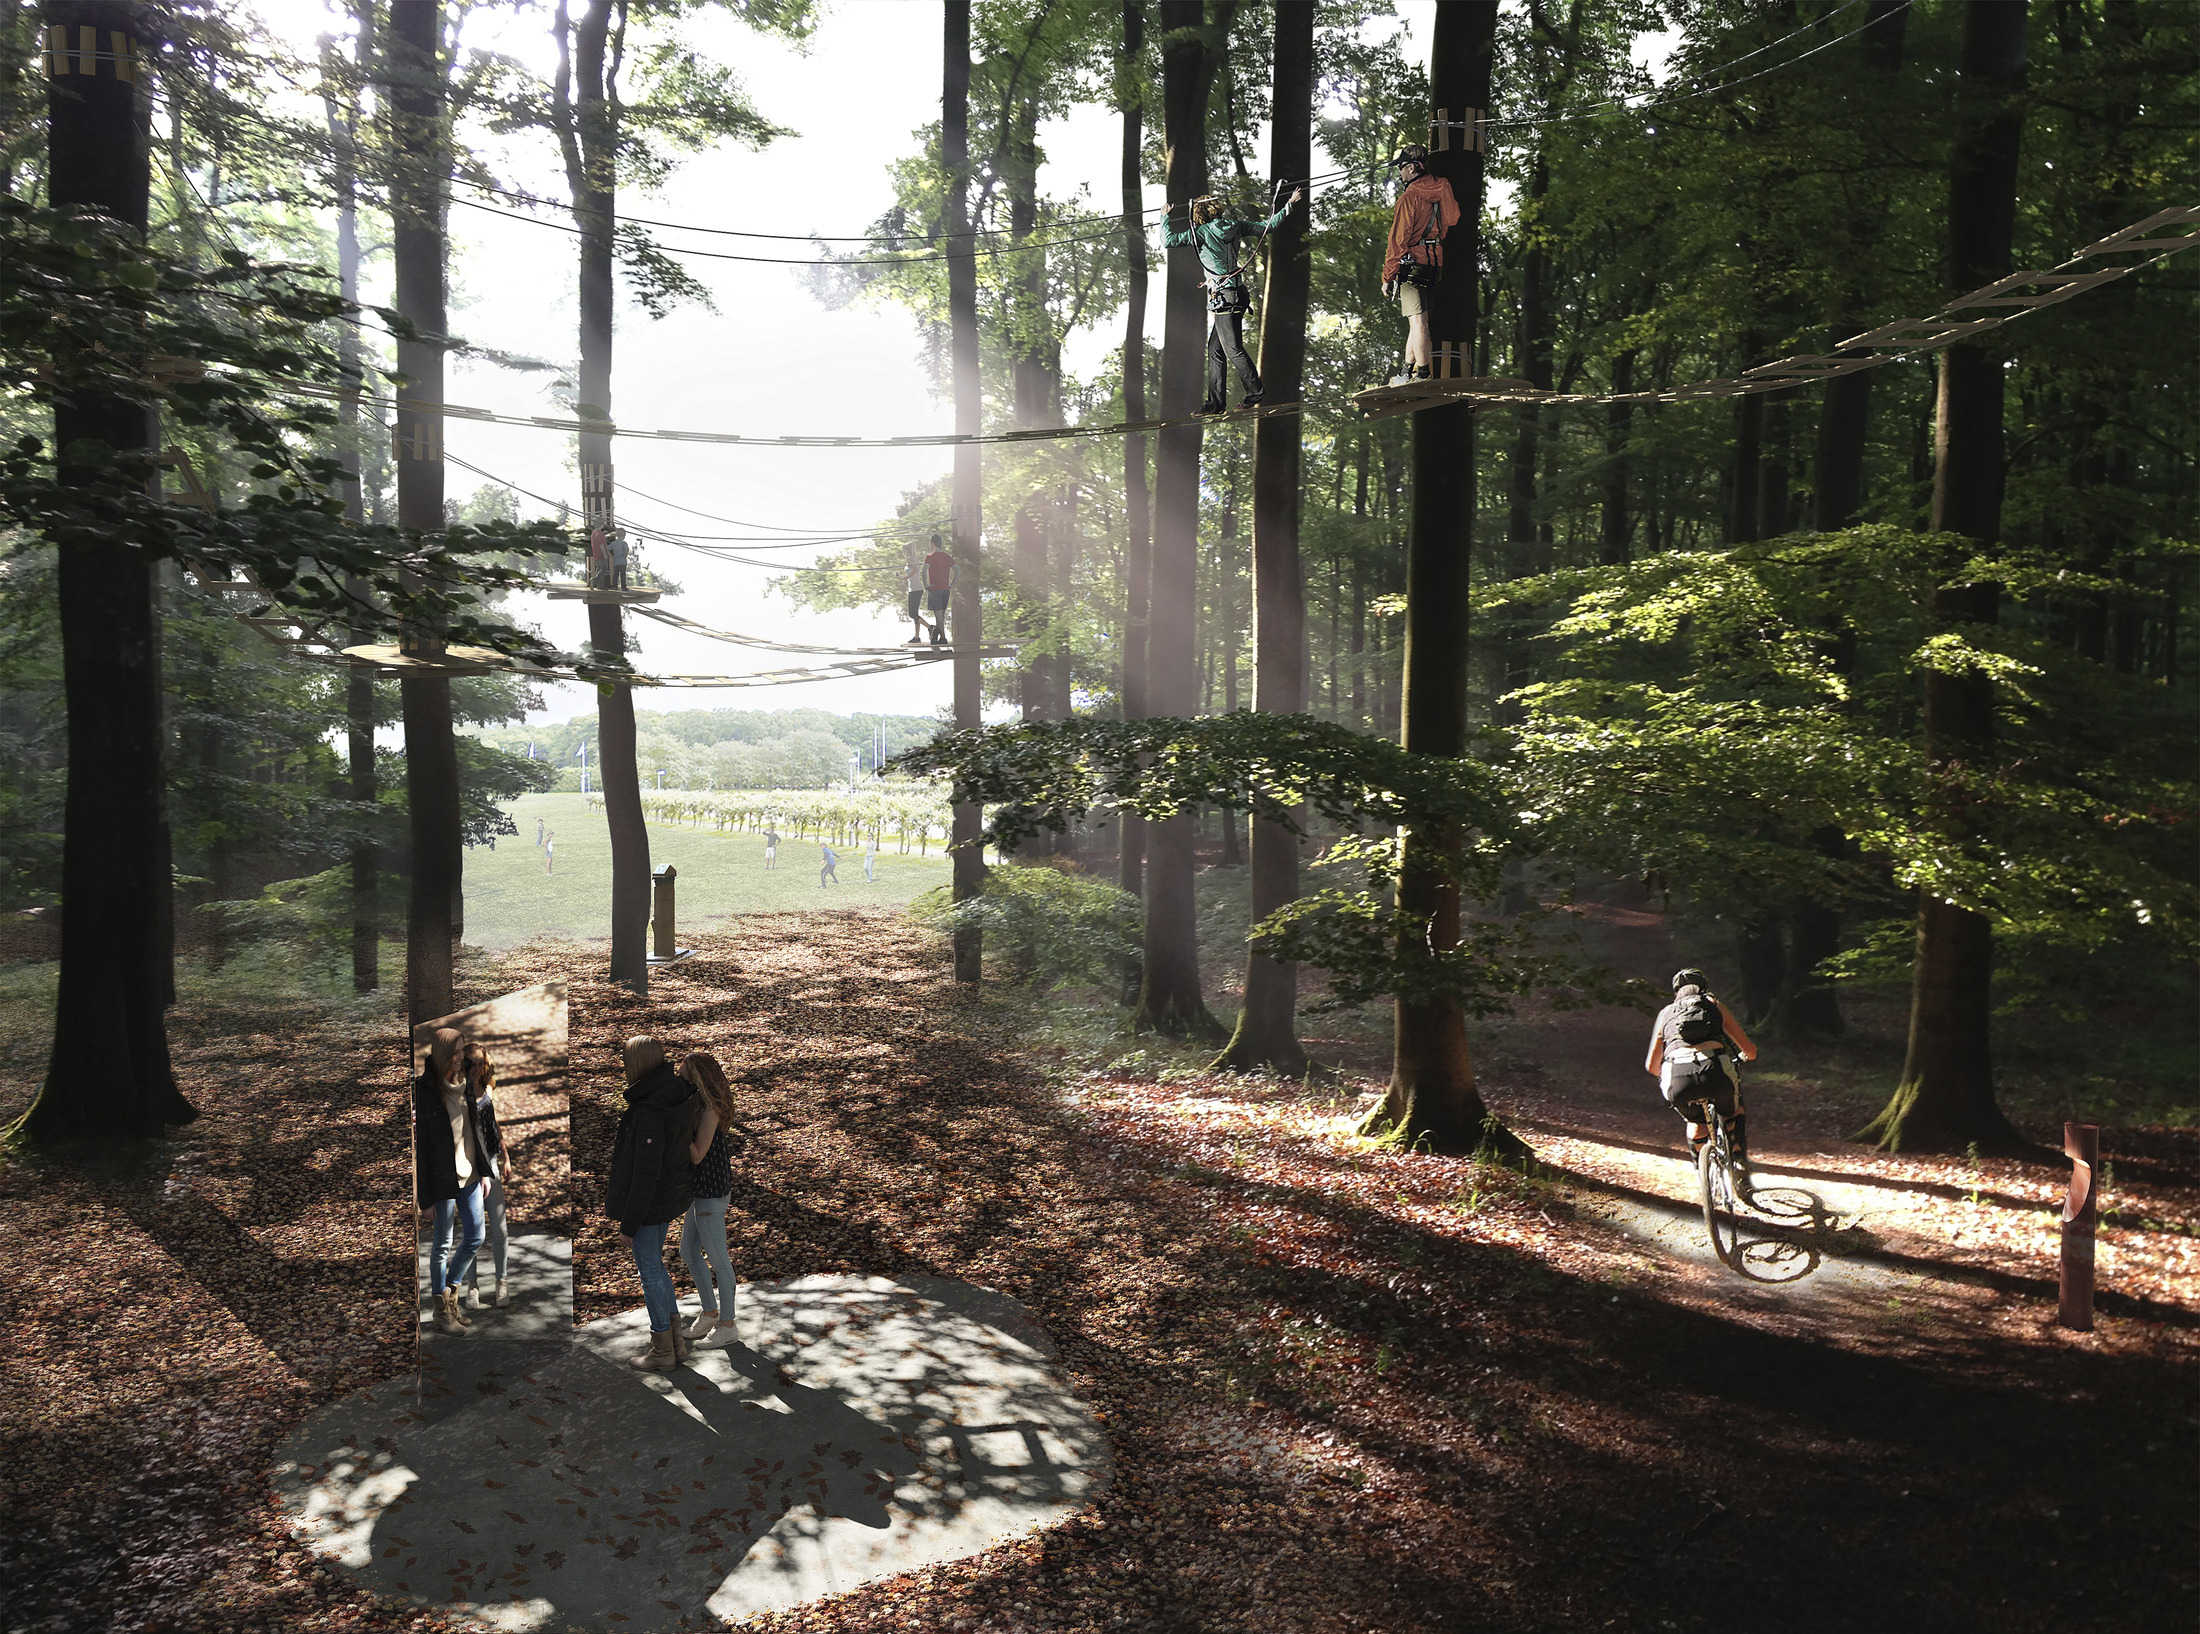 Tävlingsförslag från Nyréns, förslag på utformning av Slottsskogsvallens entrépark.